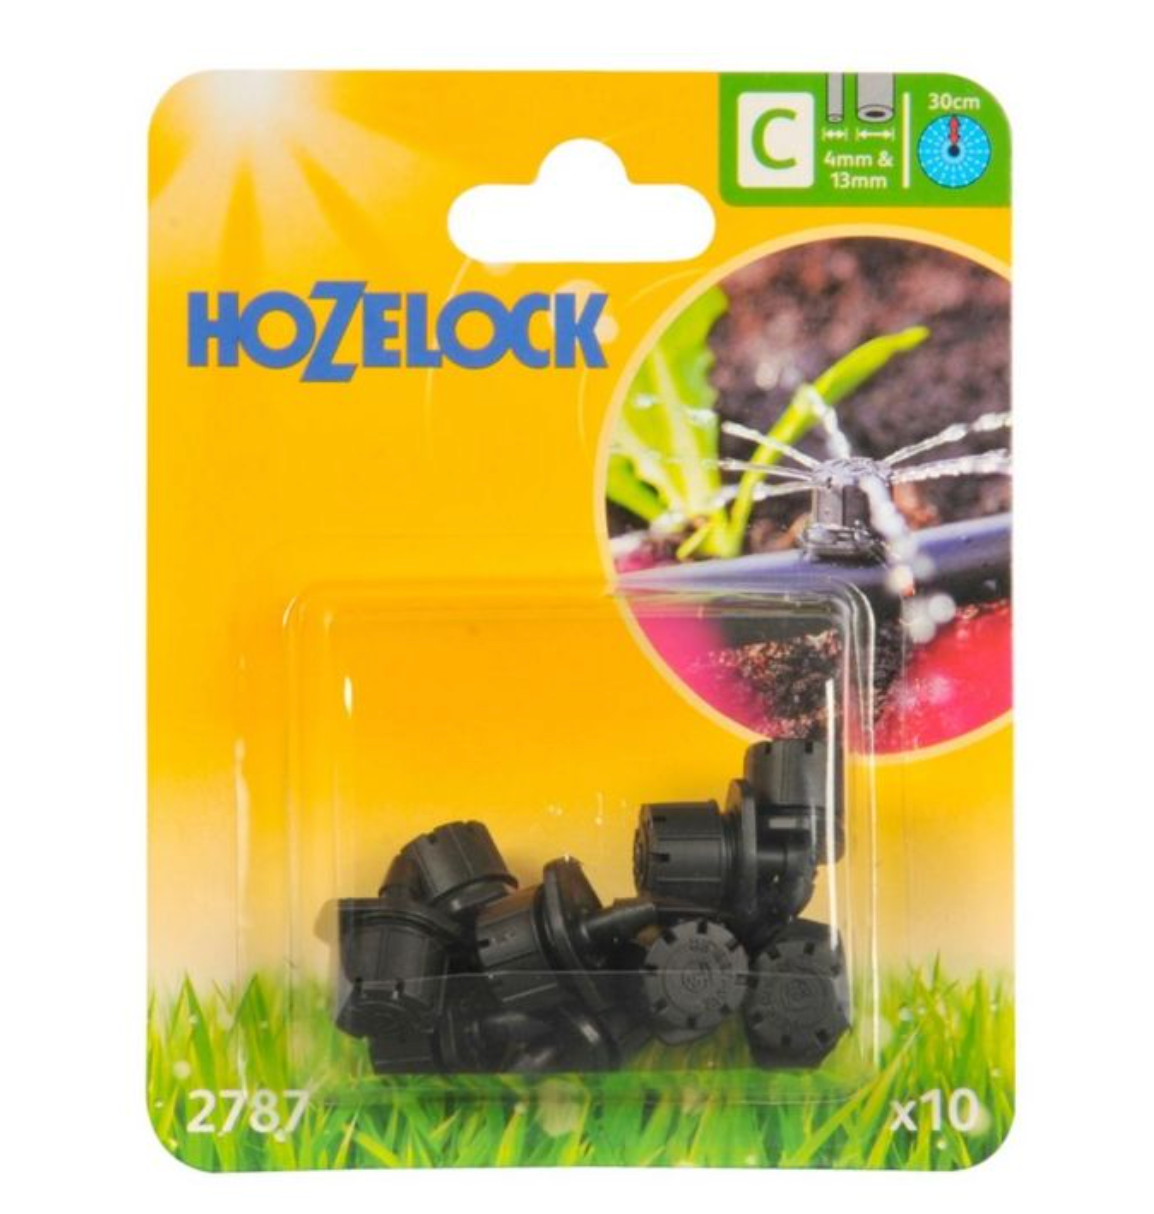 Hozelock 2787 End Line Adjustable Mini Sprinkler 4mm & 13mm - Pack of 12